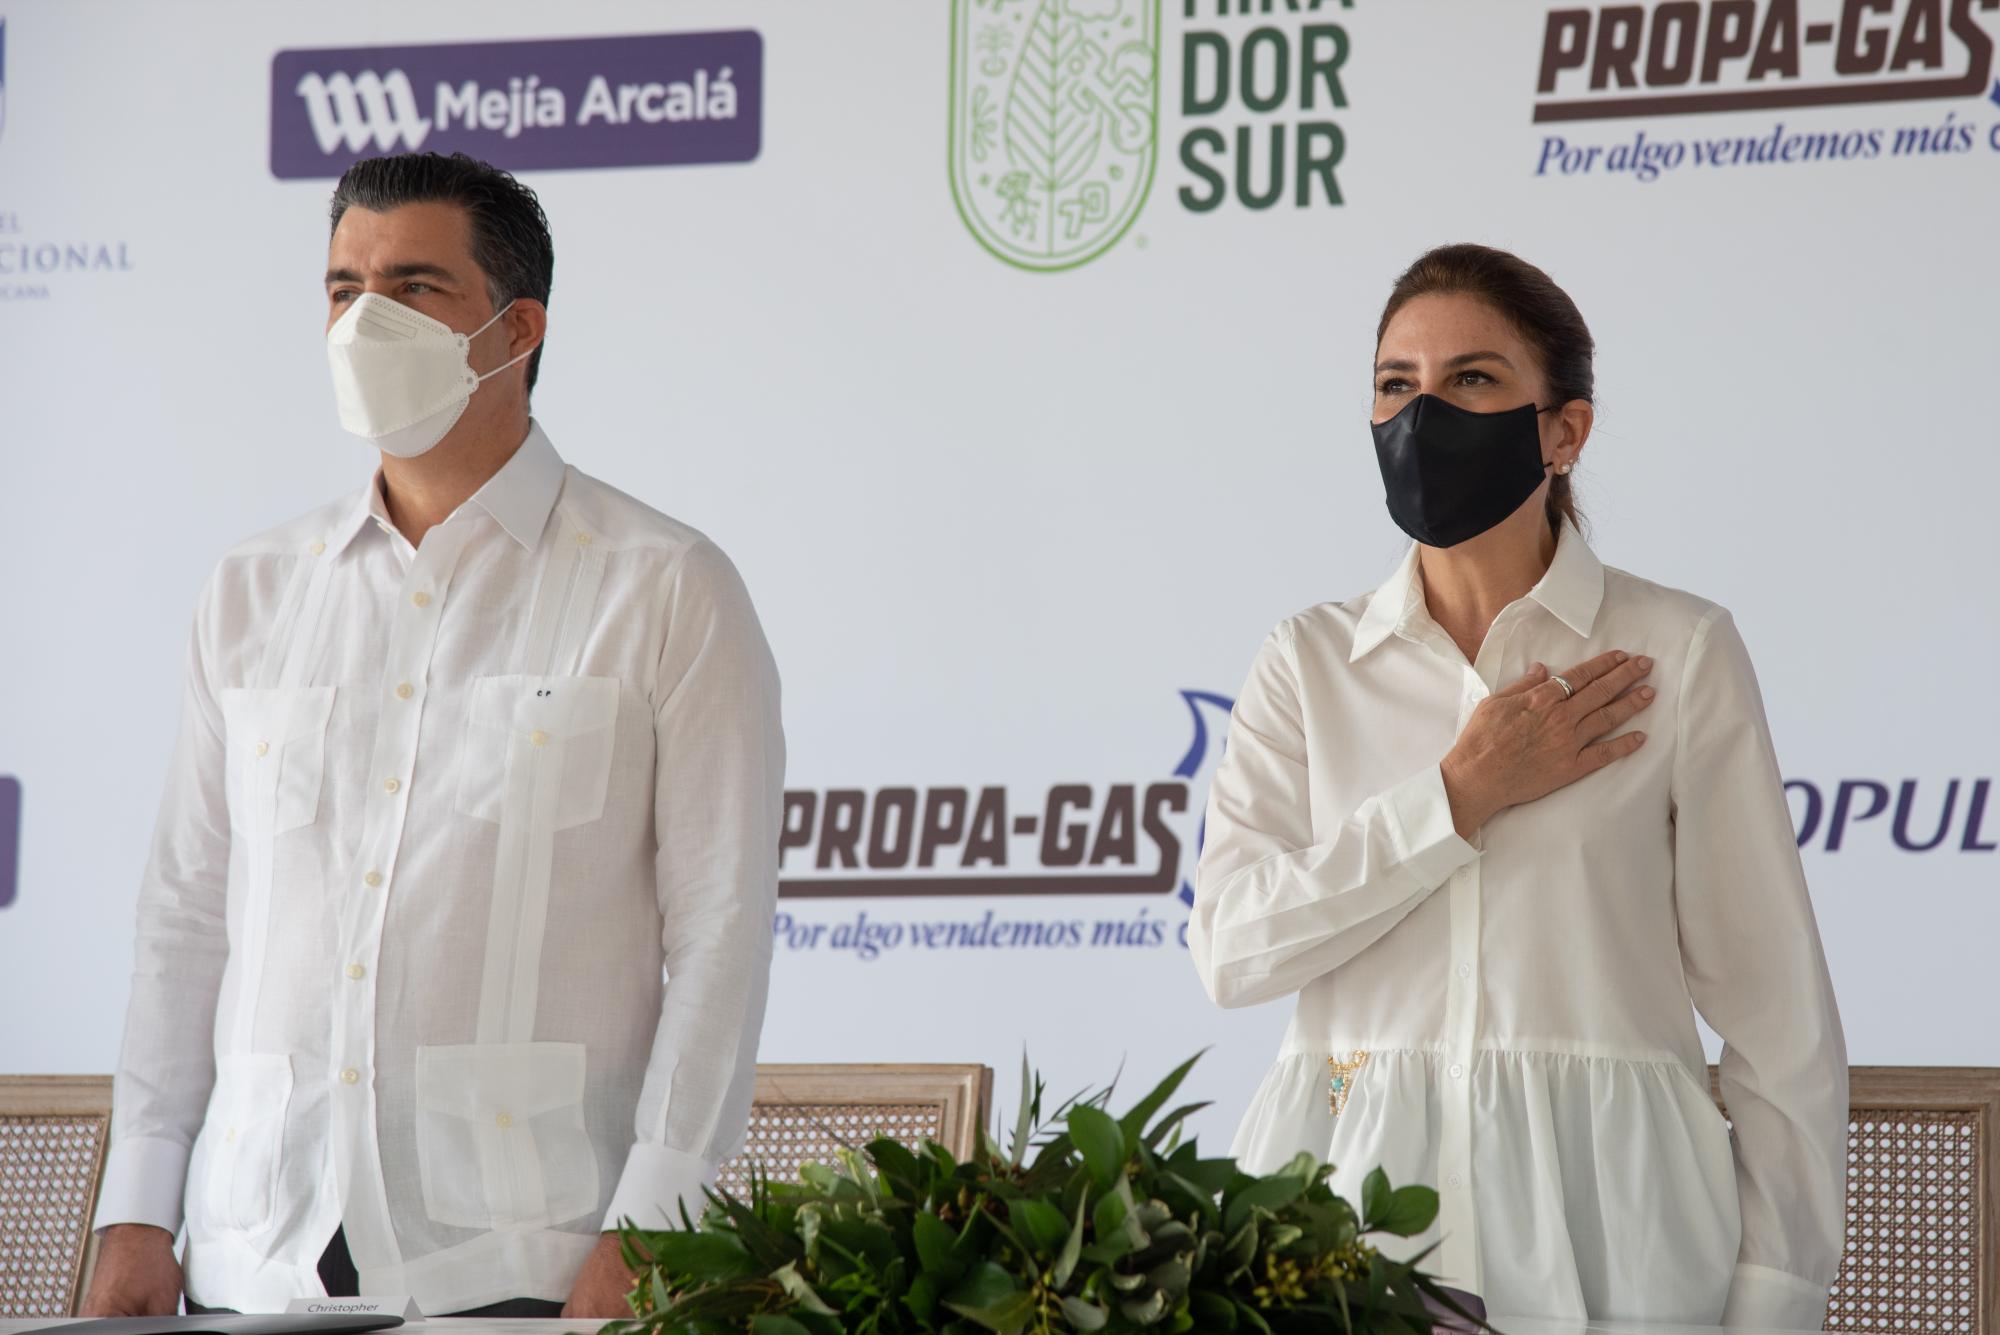 La alcaldesa Carolina Mejia encabezó el acto en el que estuvo acompañada por representantes de empresas privadas. (Foto: Dania Acevedo)